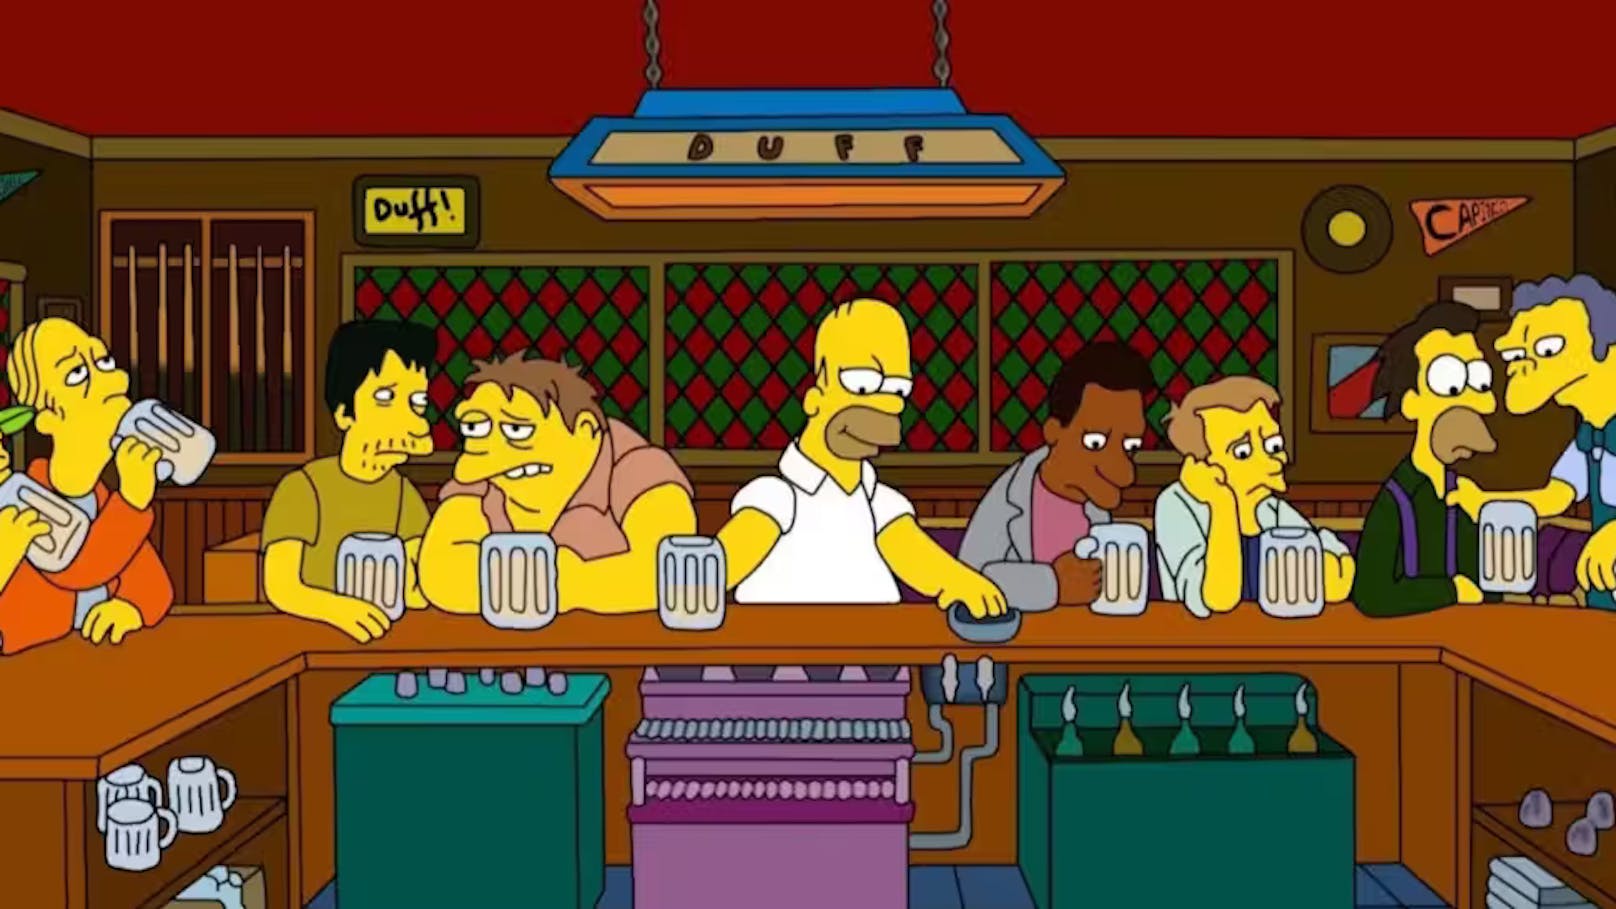 Ein Stammgast von Moe's Taverne aus der beliebten Animationsserie "Die Simpsons" stirbt. Achtung Spoiler: Die Auflösung folgt im nächsten Bild.